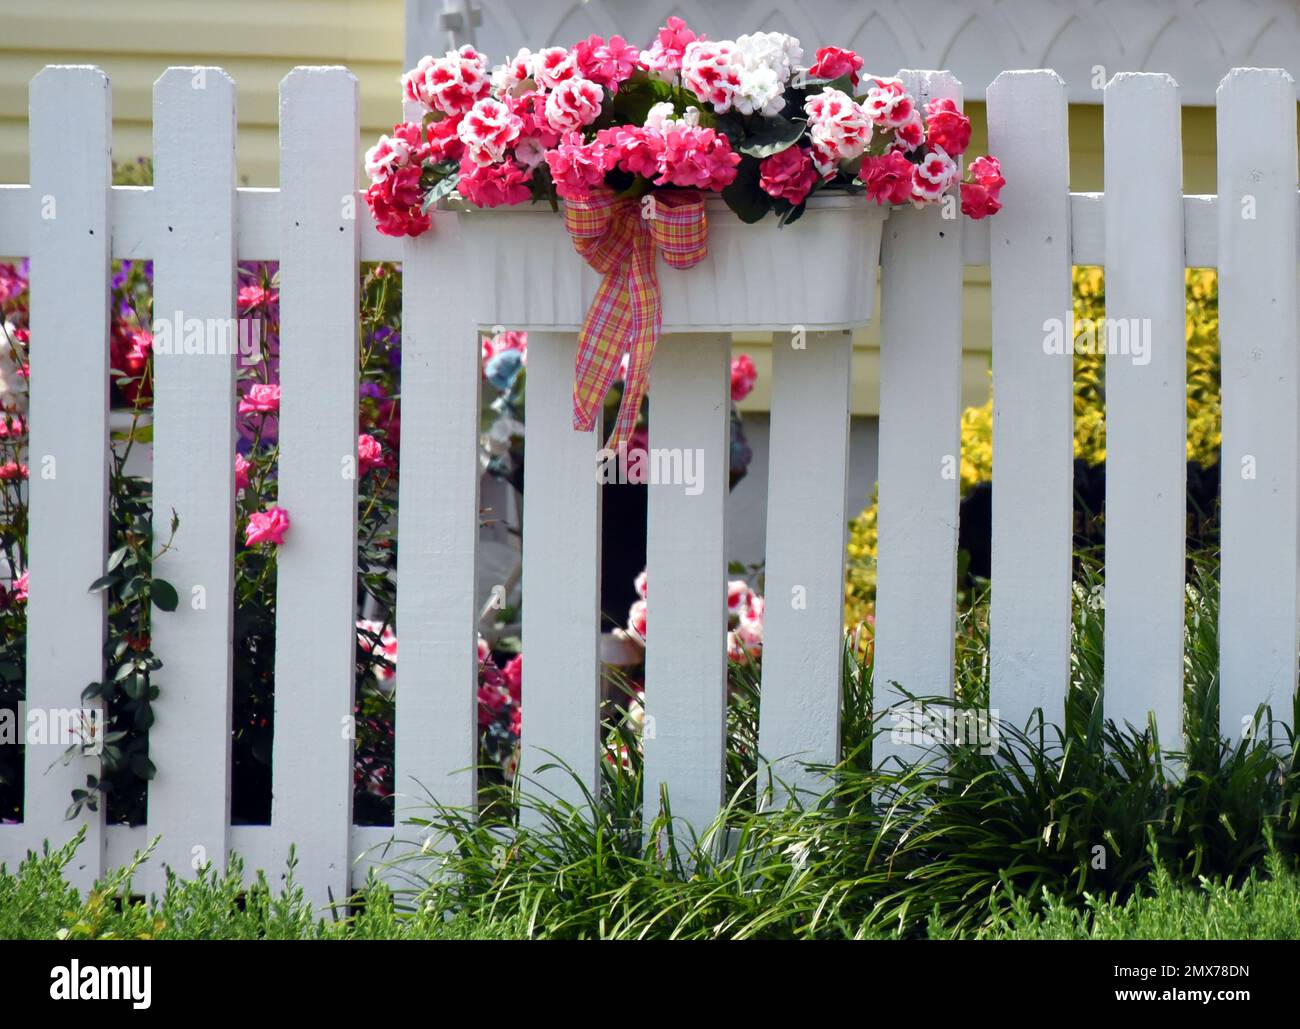 Flores de seda rosa llenan caja de madera blanca. Cuelga en la valla de madera blanca que rodea el patio. Rosas rosas rosas reales se asoman entre listones. Foto de stock